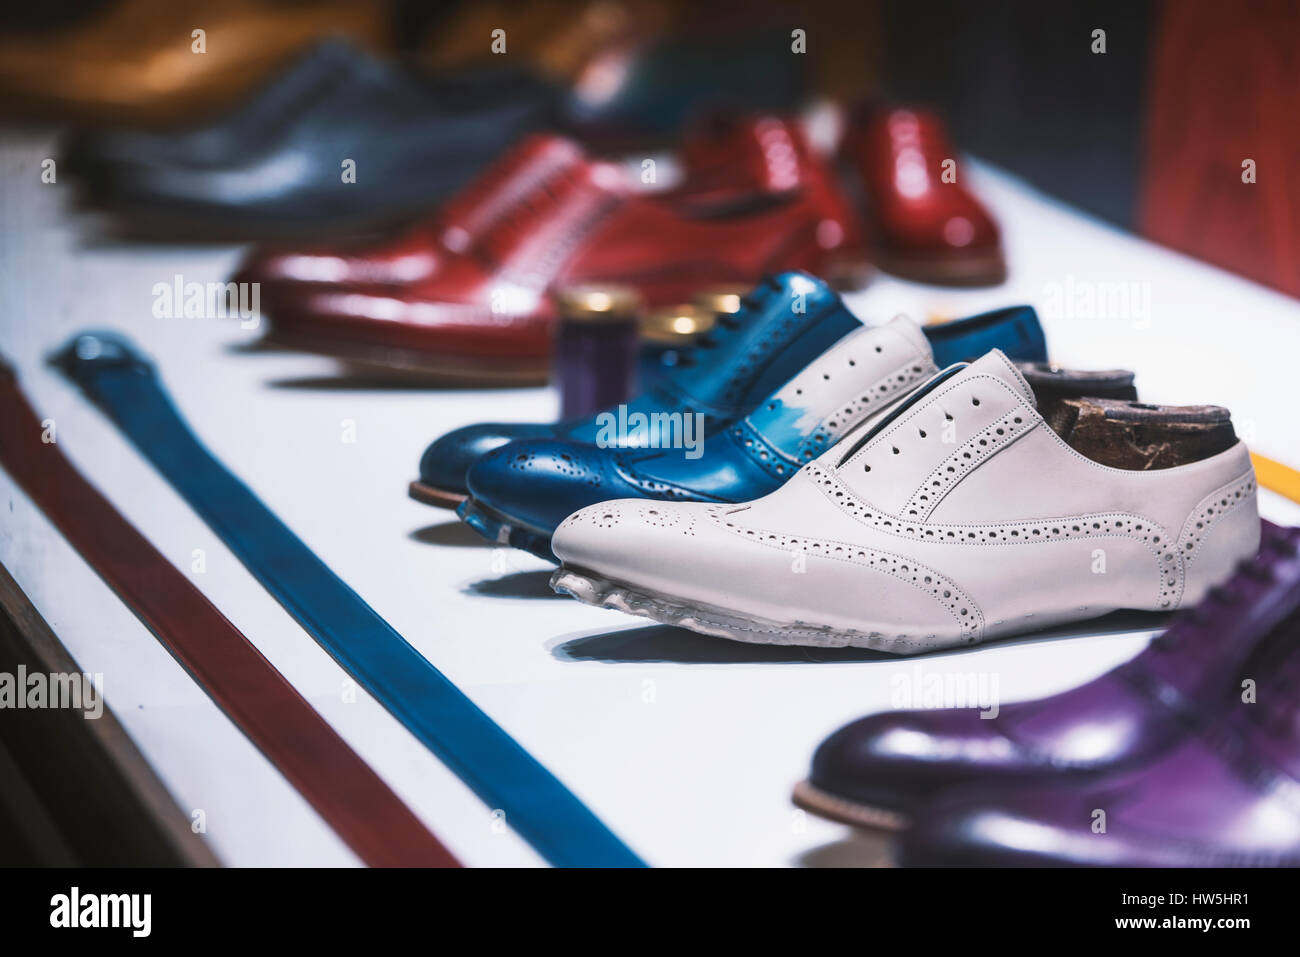 Ausgefallene bunte Schuhe in einem Herrenbekleidung Shop Stockfotografie -  Alamy